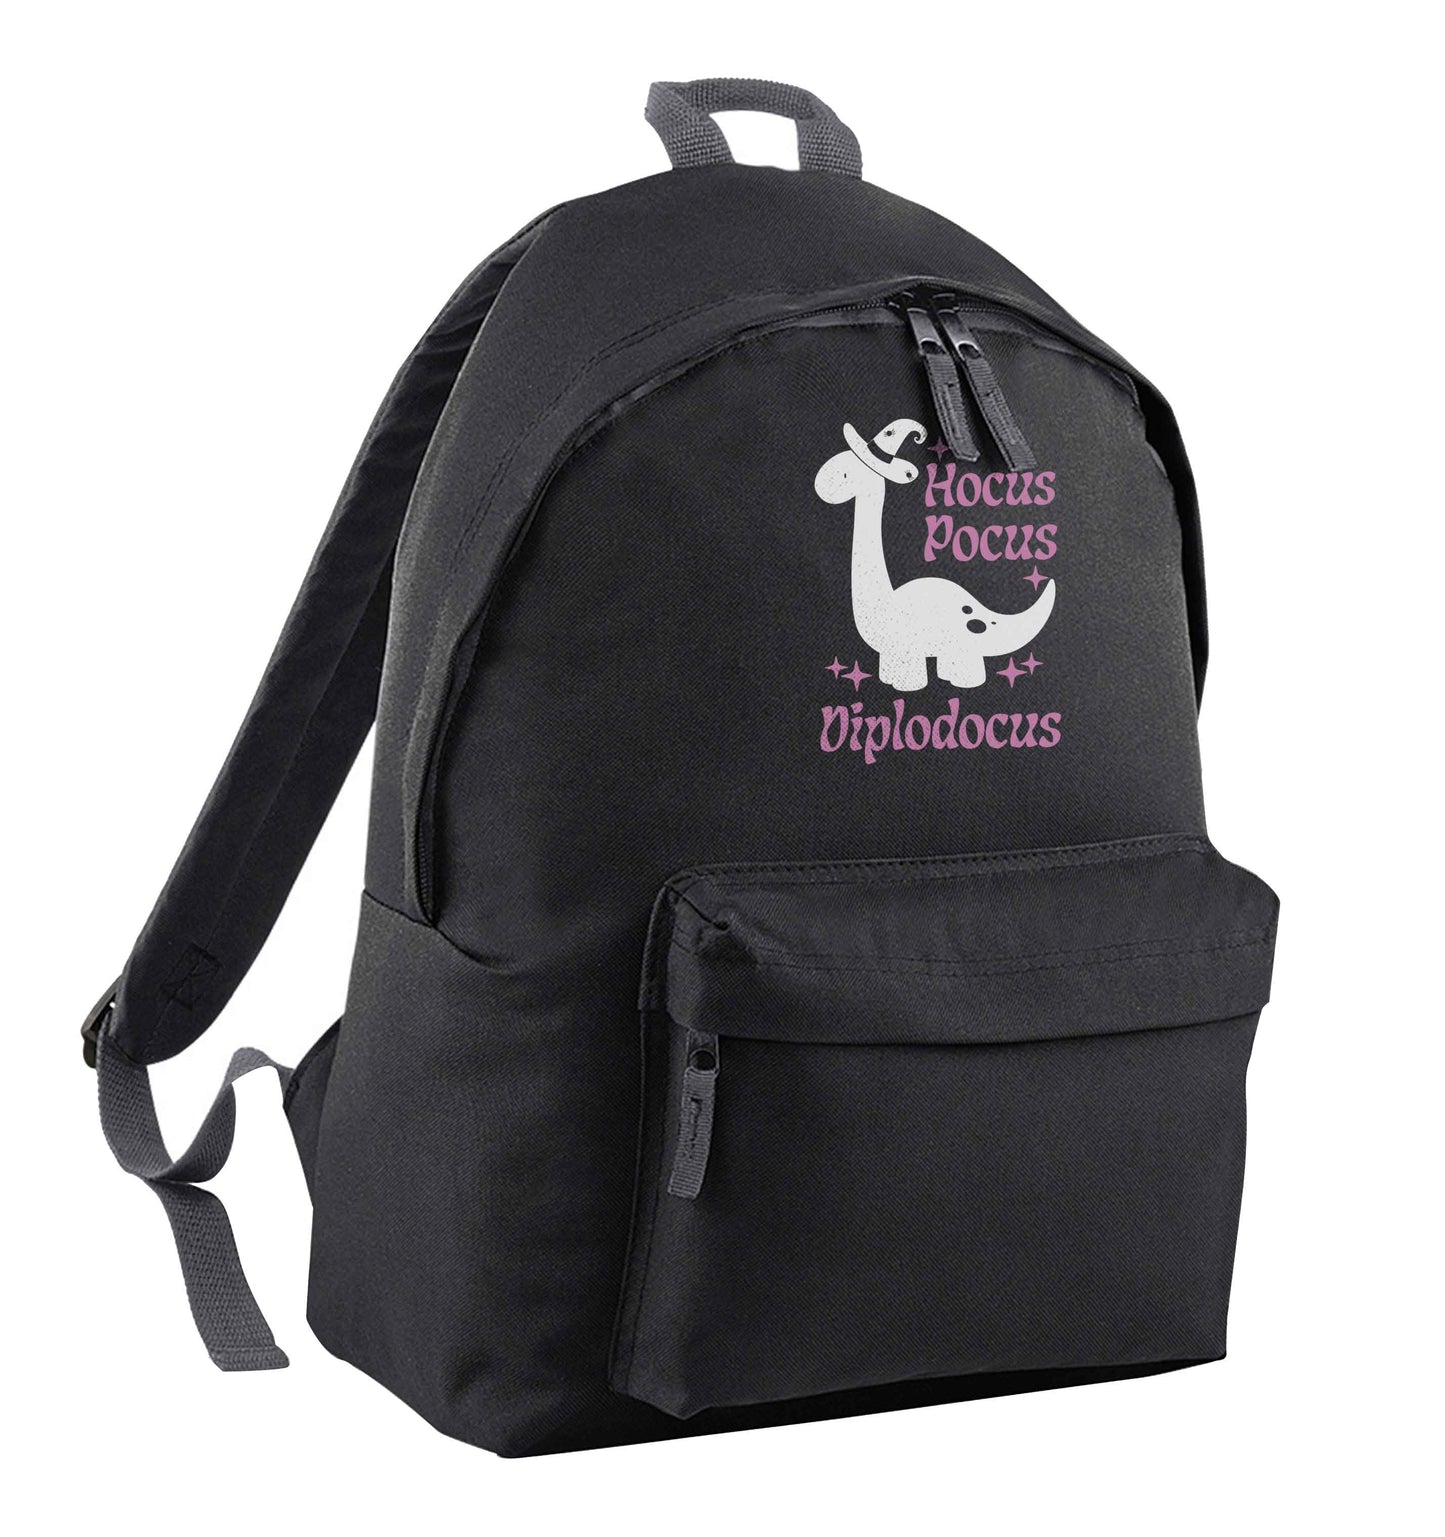 Hocus pocus diplodocus Kit black children's backpack